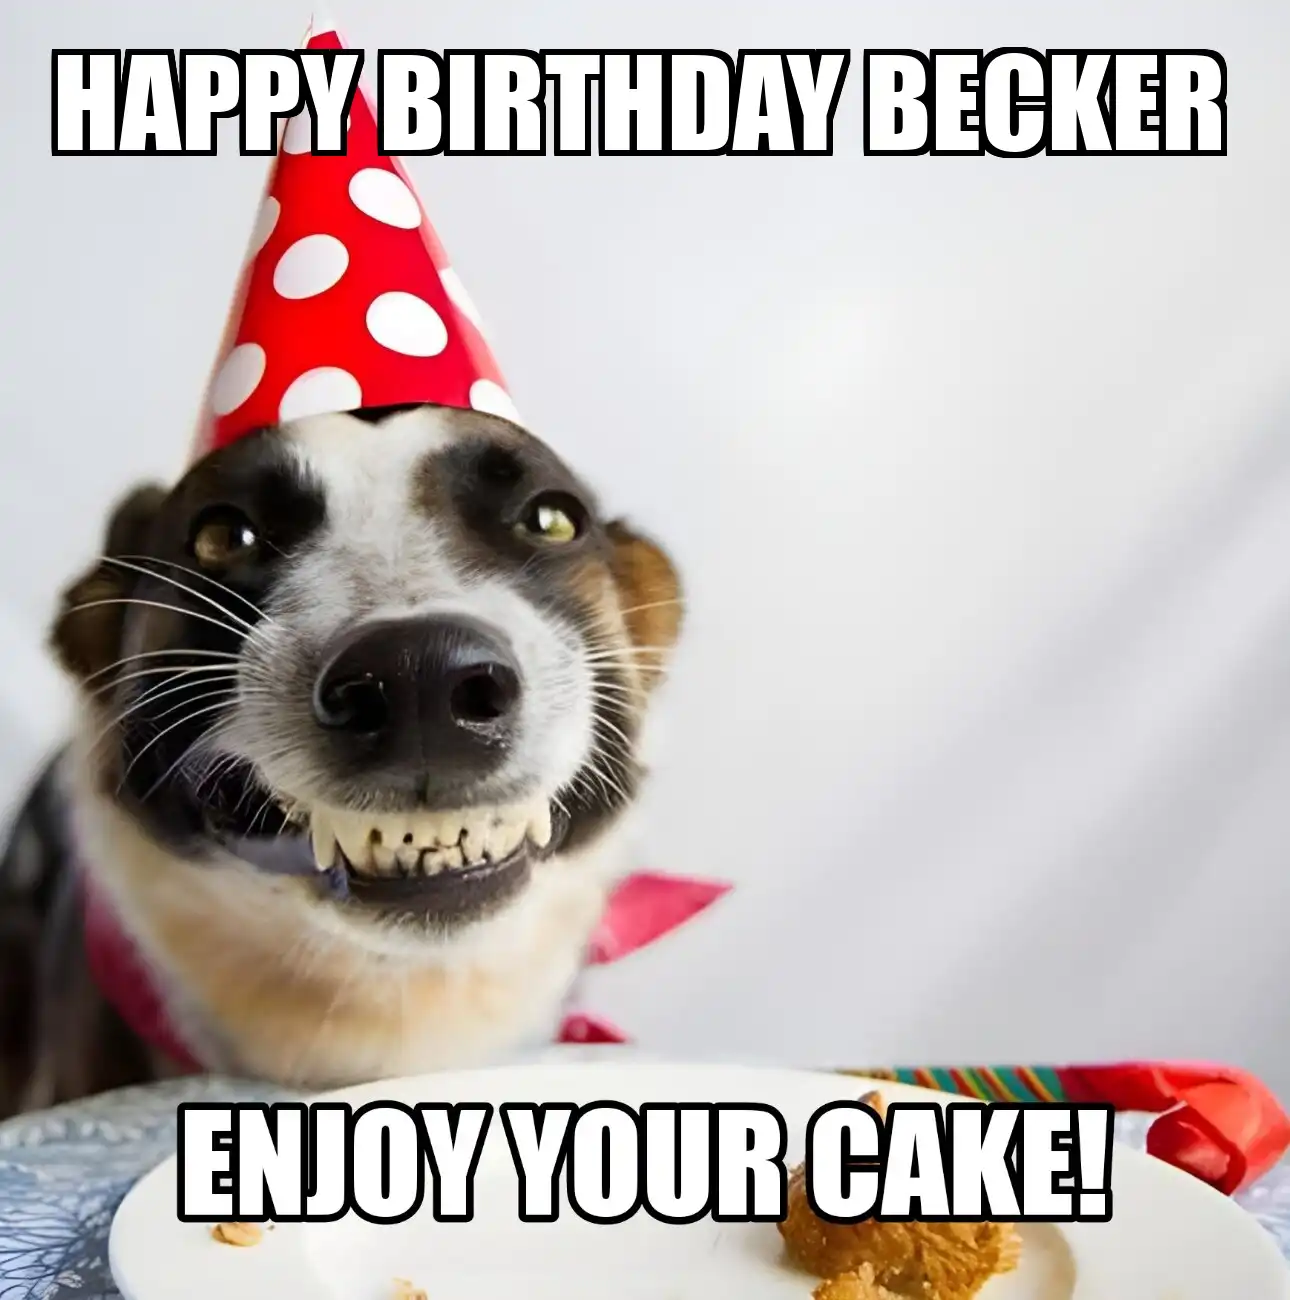 Happy Birthday Becker Enjoy Your Cake Dog Meme